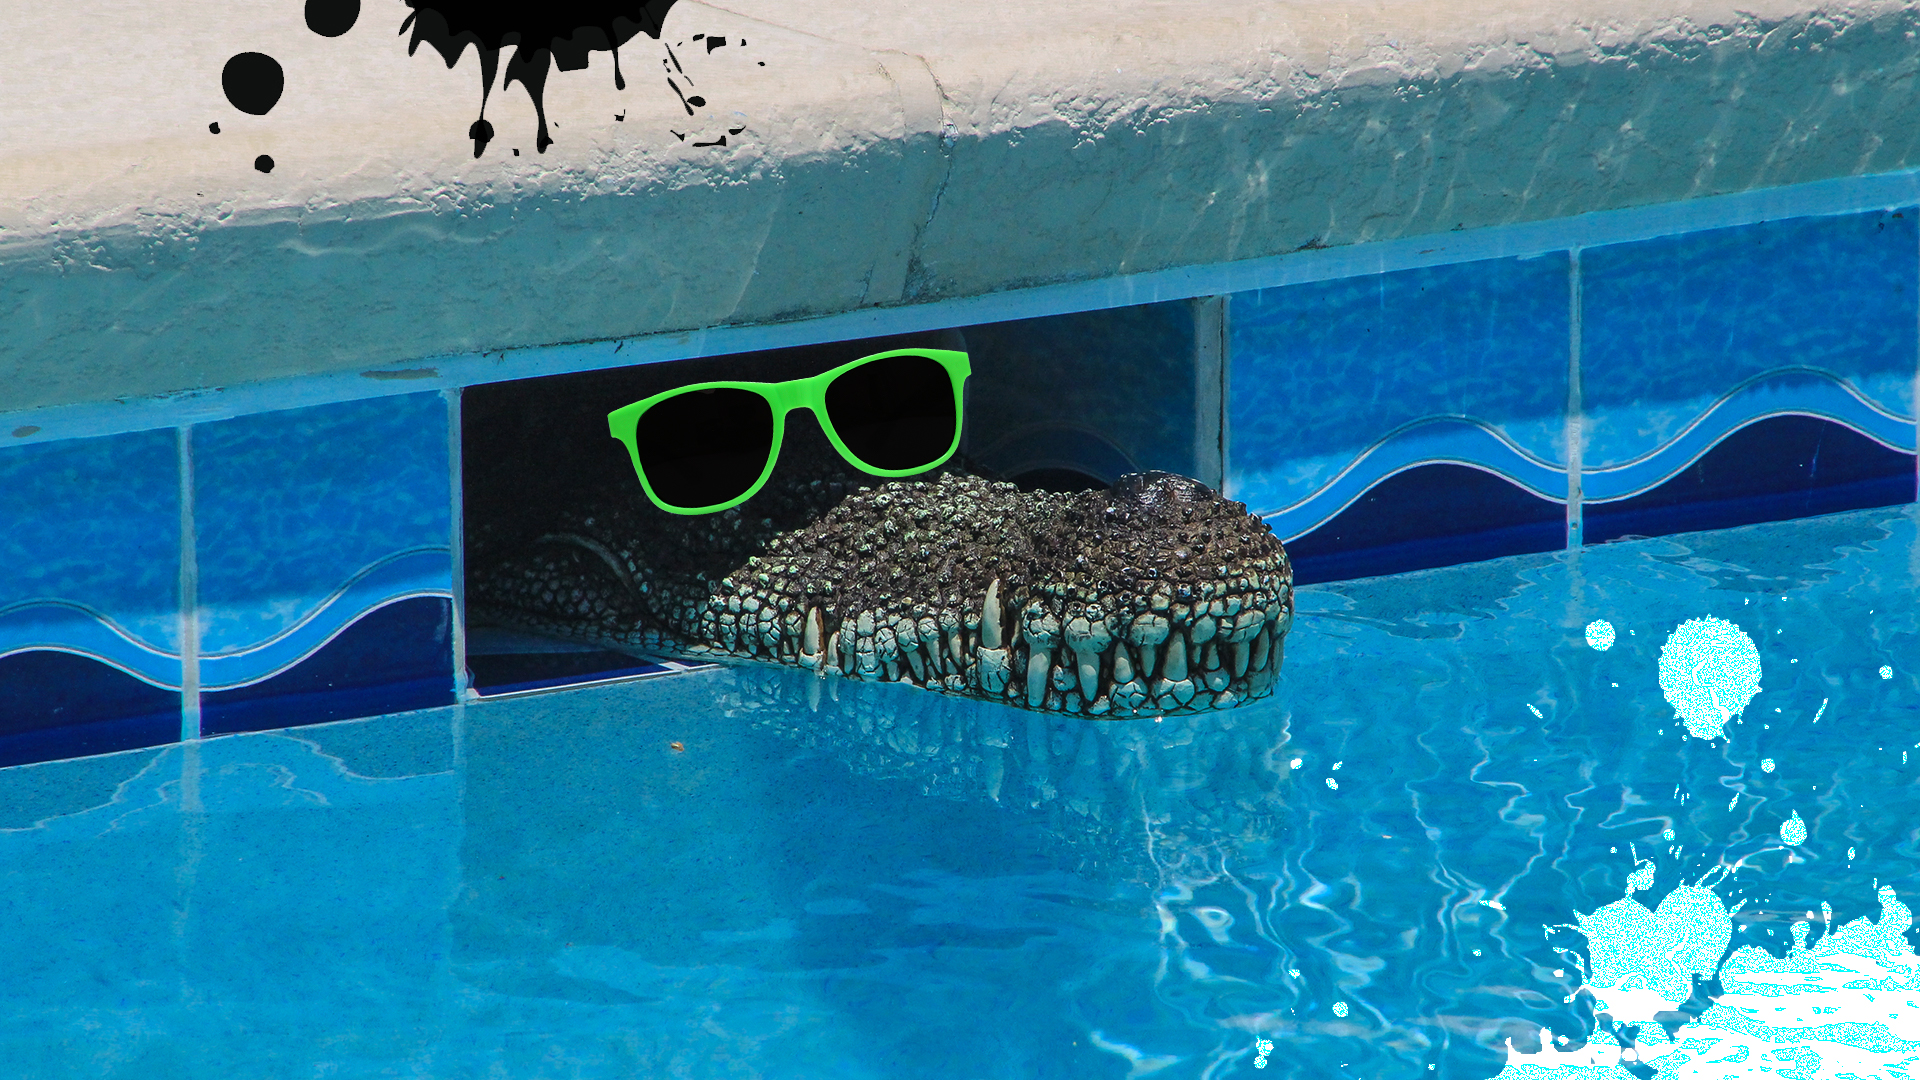 A crocodile in a pool